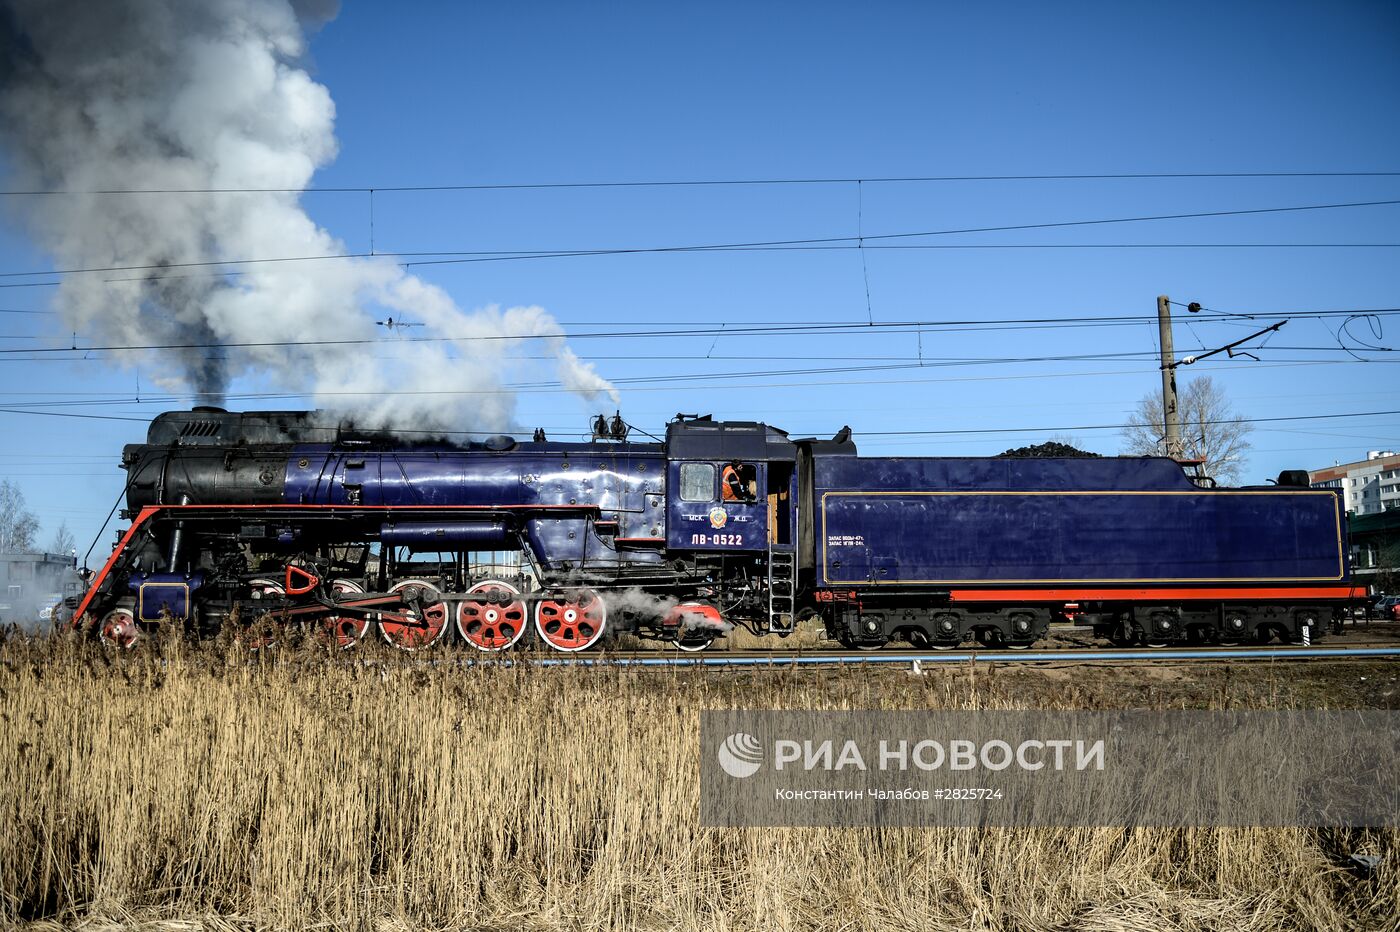 Прибытие туристического ретропоезда в Великий Новгород